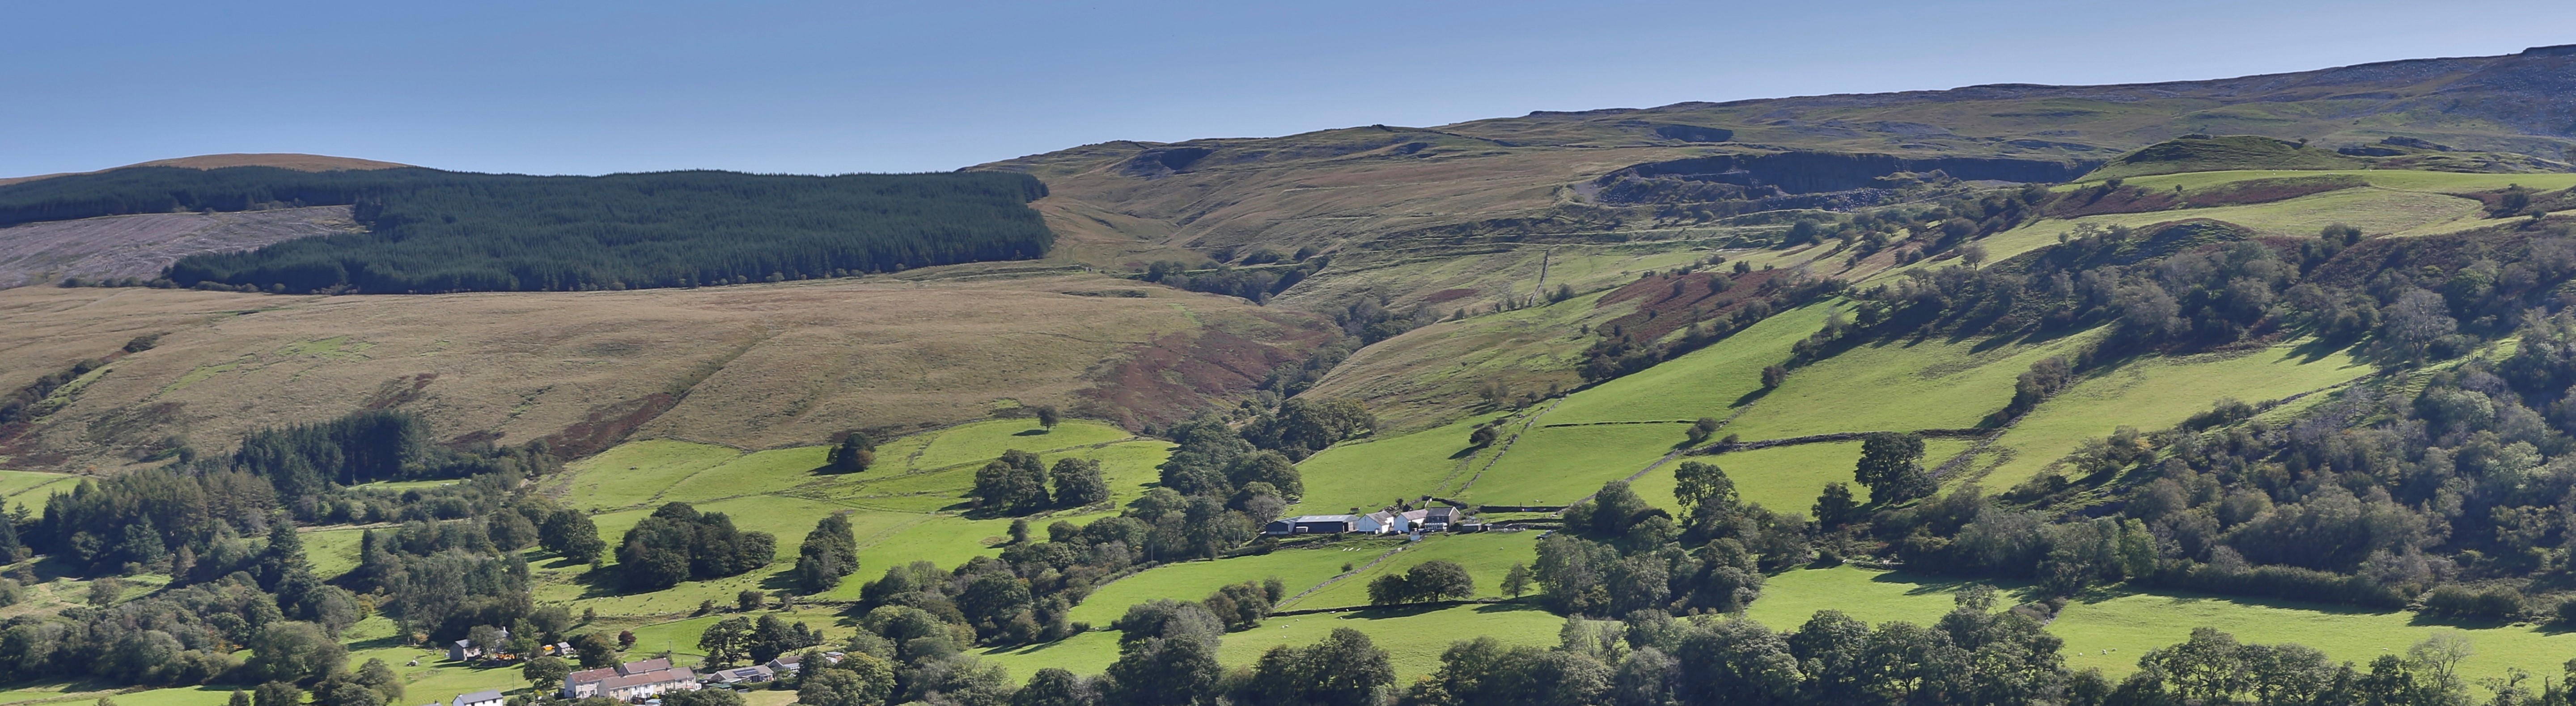 Welsh Landscape Banner